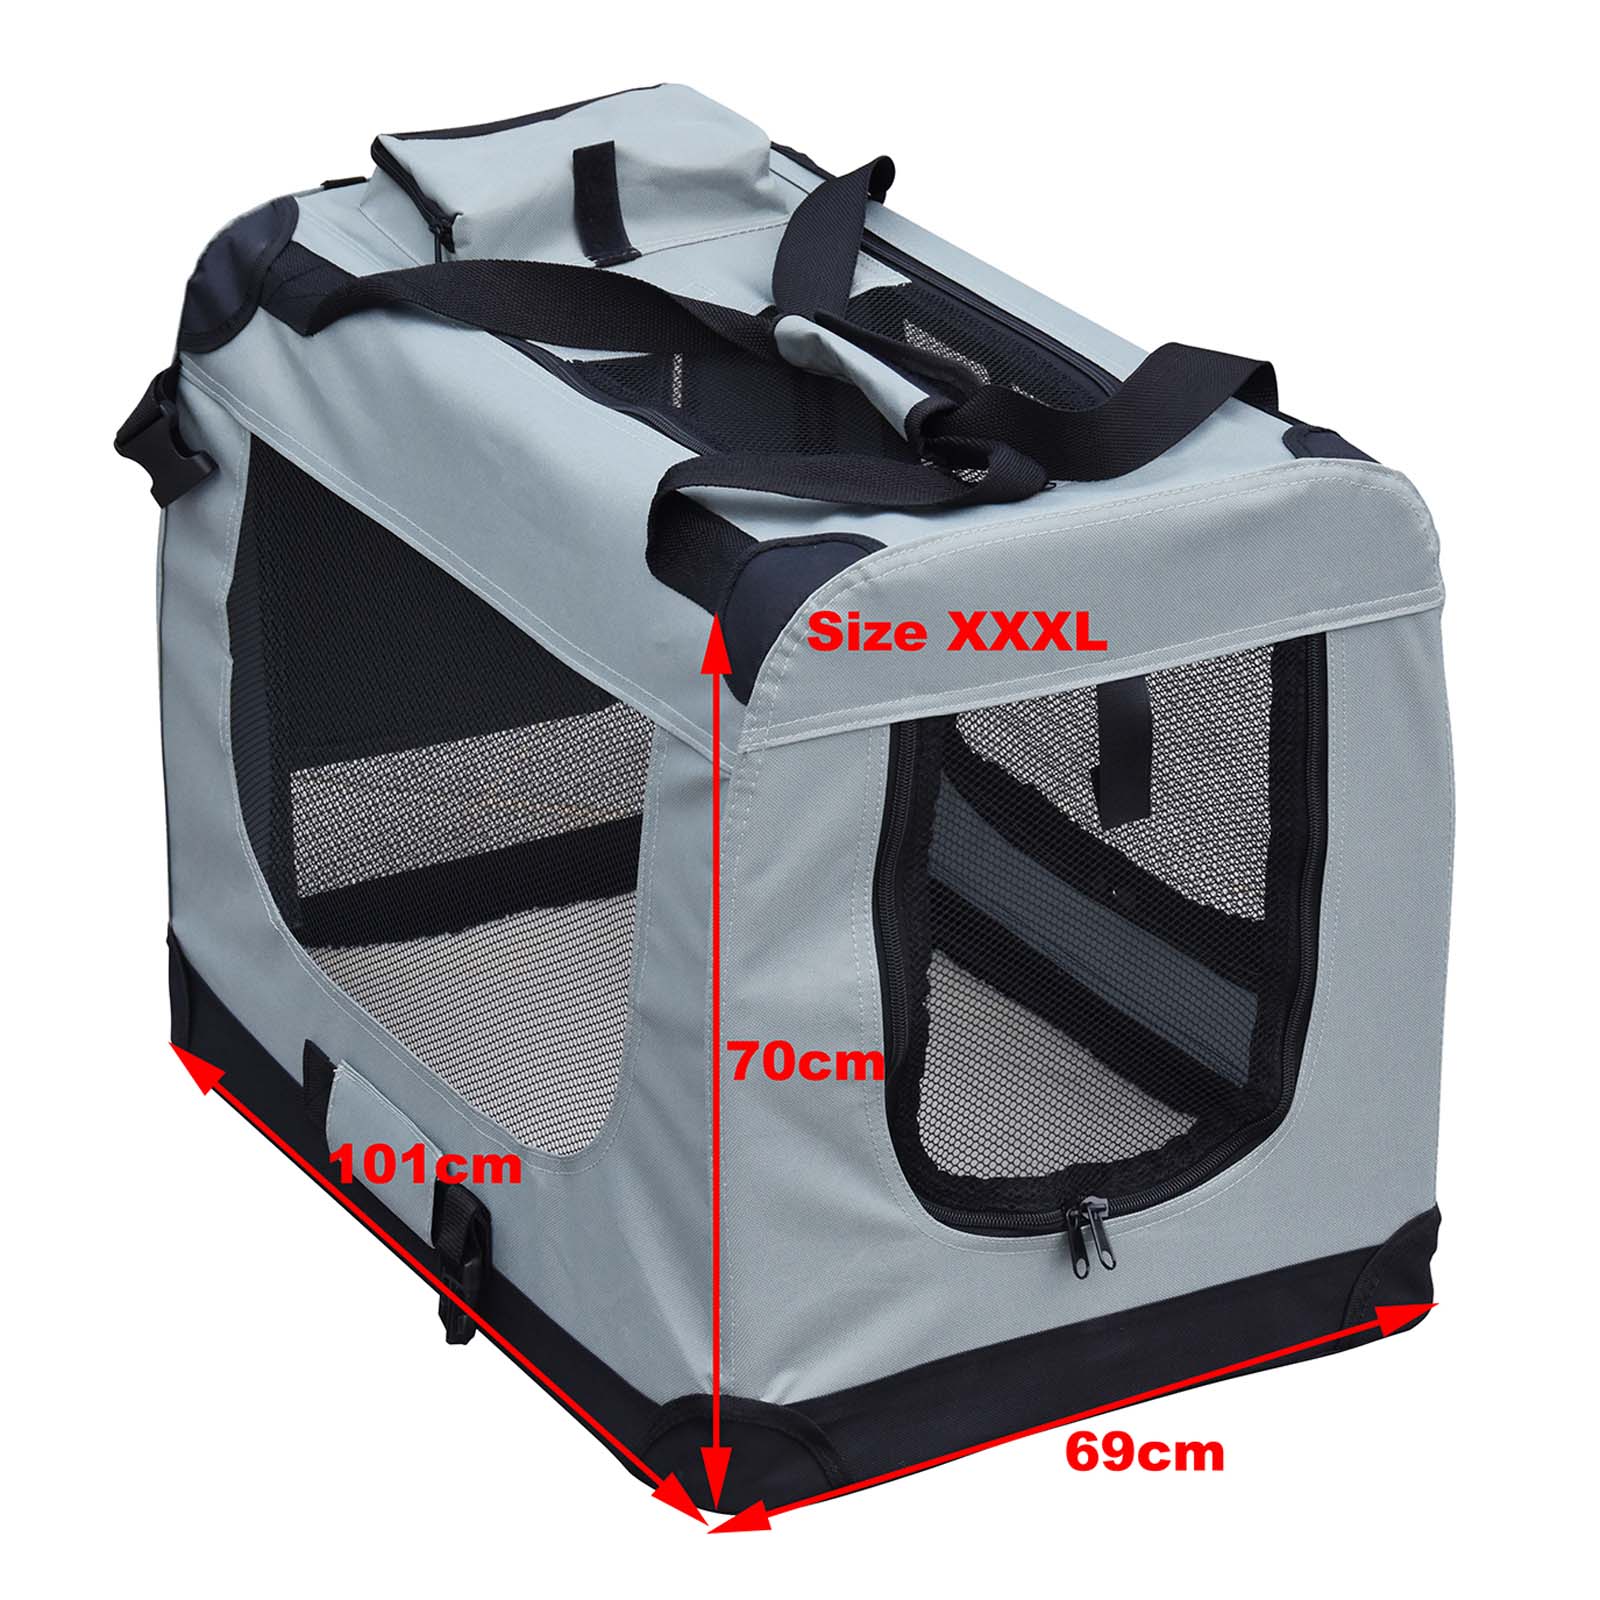 Cage box caisse de transport chien mobile aluminium XXL double